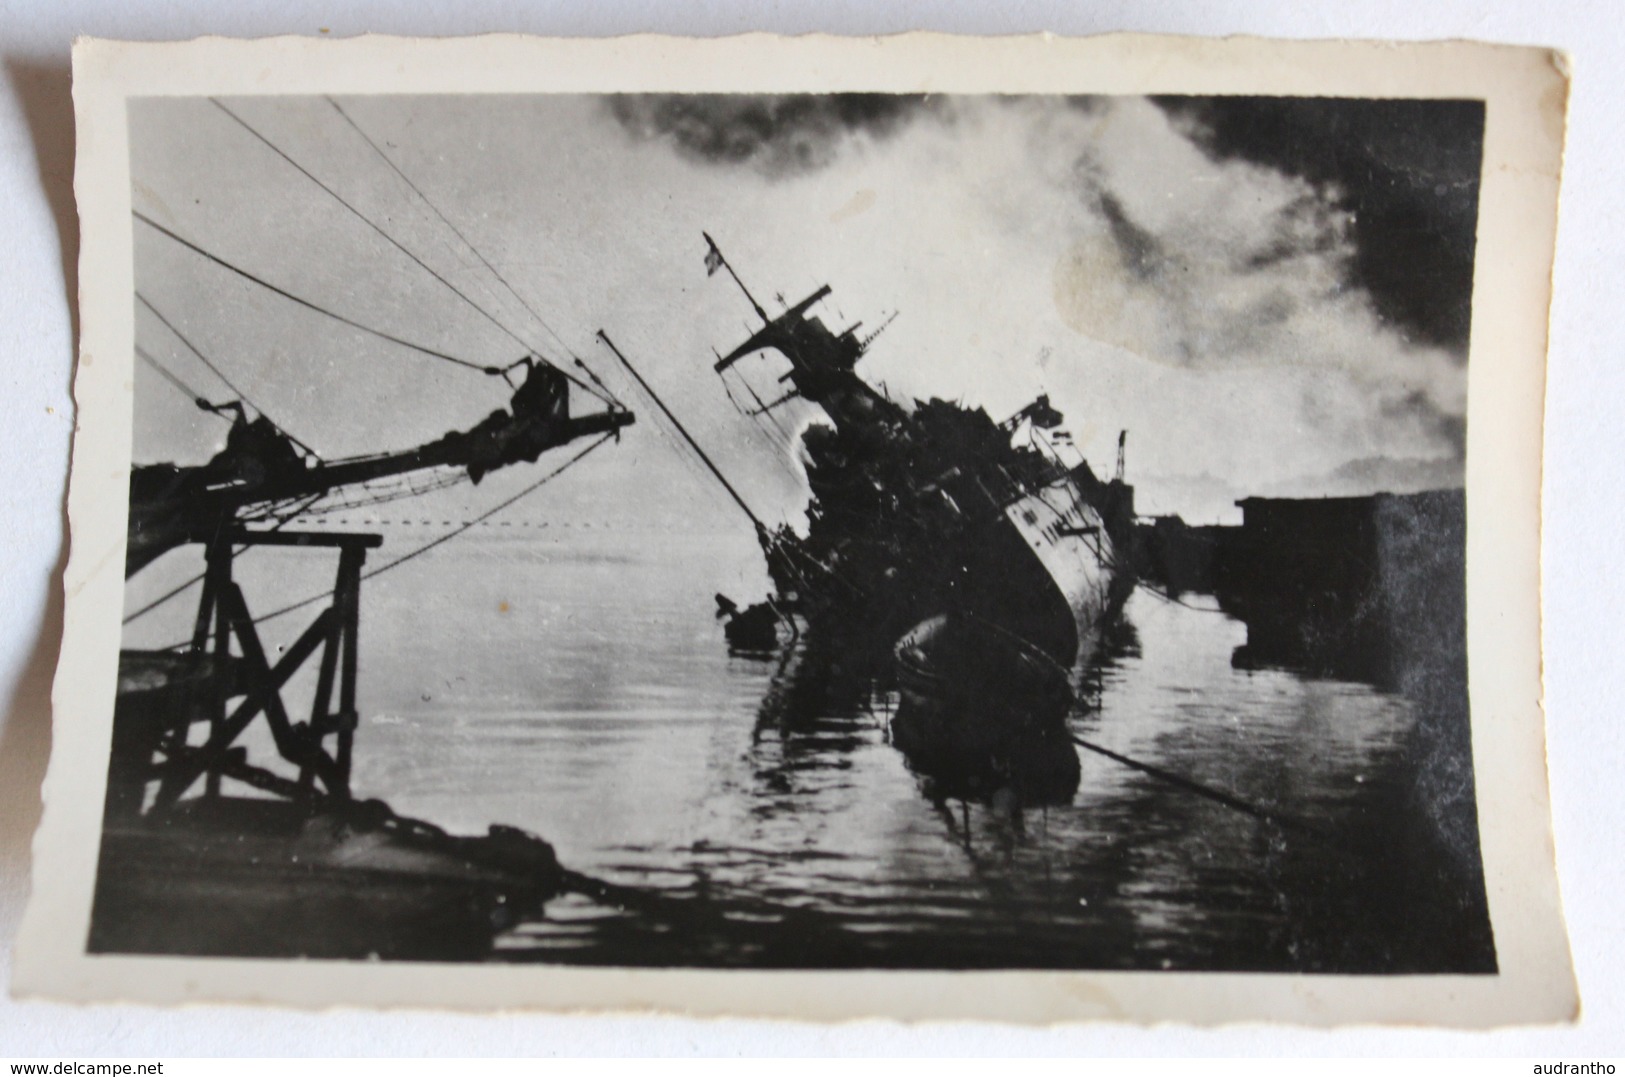 9 photos originales 27 novembre 1942 WWII sabordage flotte française Toulon tank allemand navire guerre 39-45